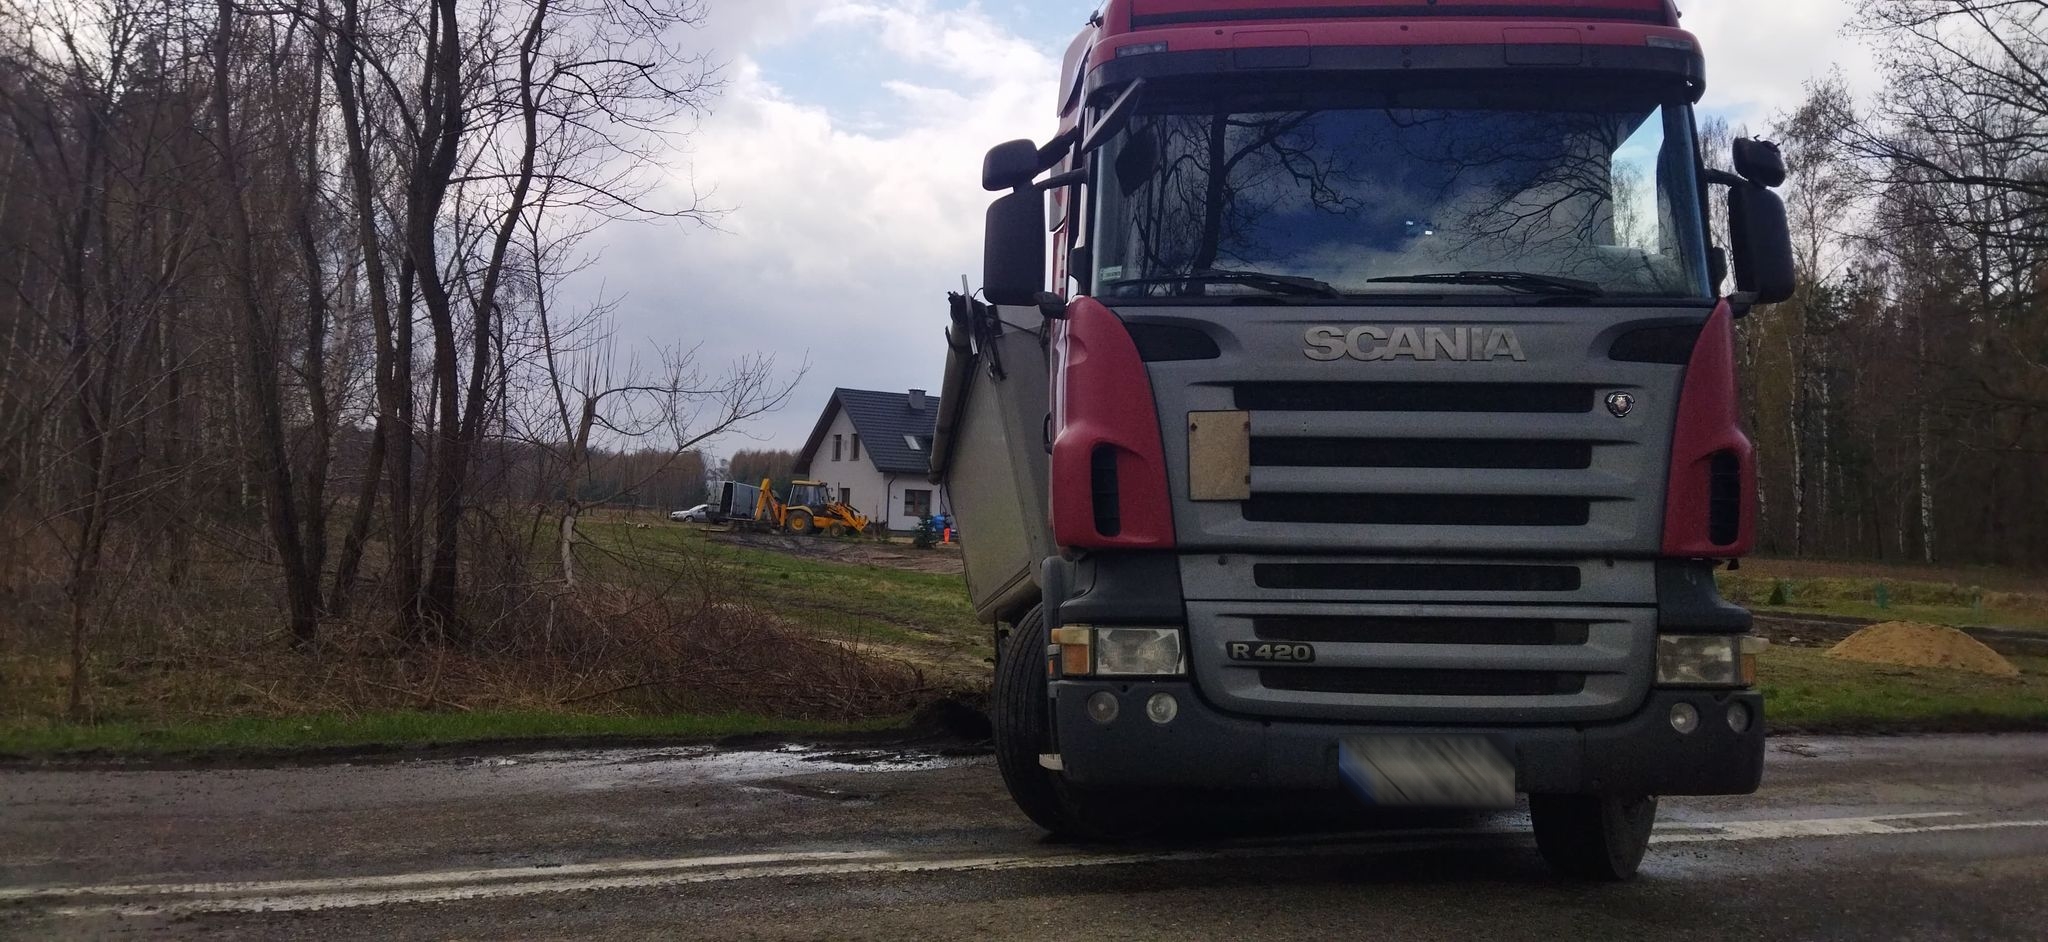 Pojazd ciężarowy blokuje częściowo drogę wojewódzką. Przejazd tylko dla osobówek (zdjęcia)